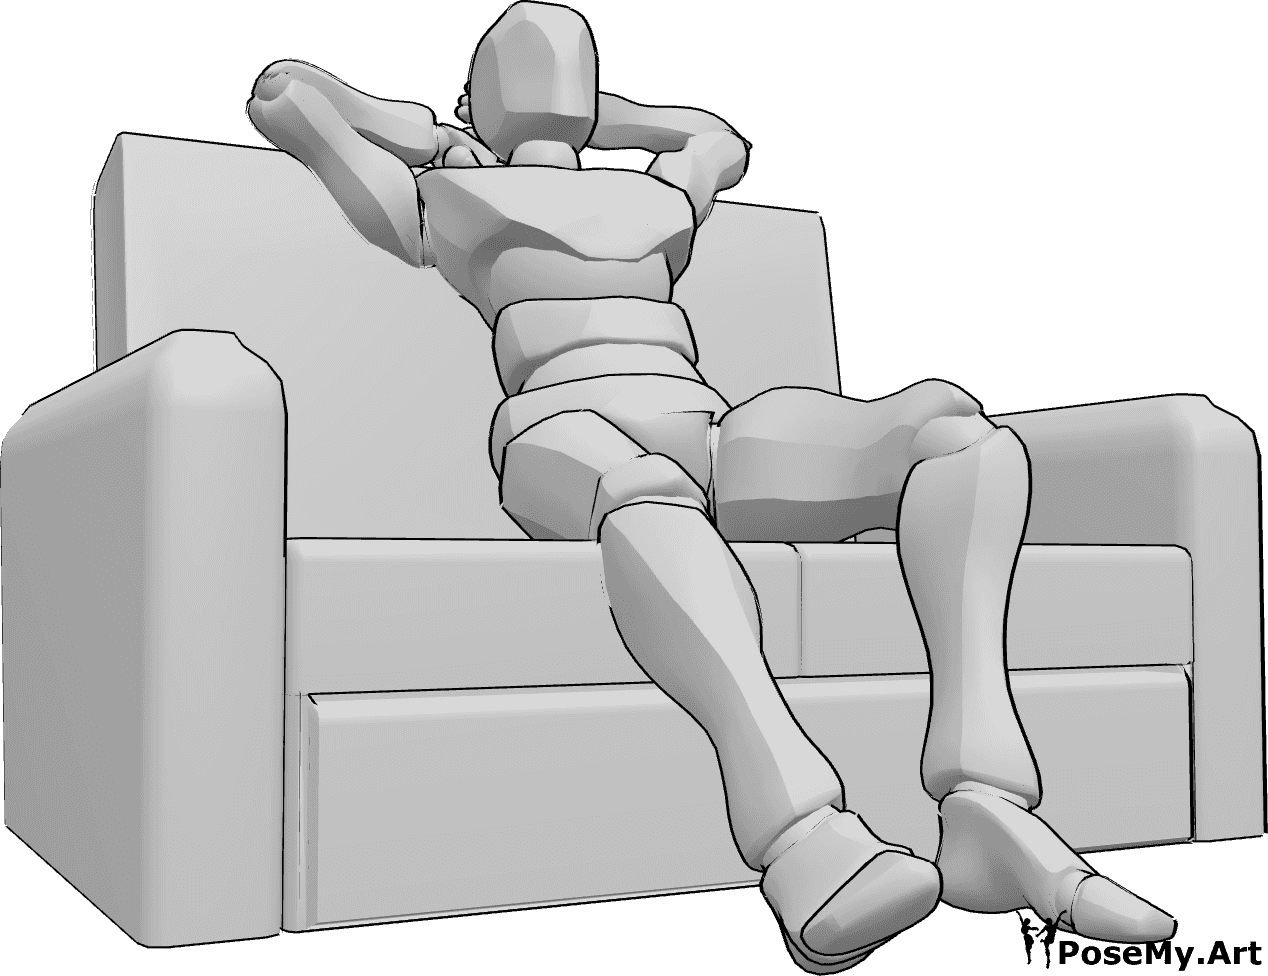 Posen-Referenz- Couch-Sitz-Pose - Das Männchen sitzt bequem auf der Couch und streckt seine Beine und Arme aus.